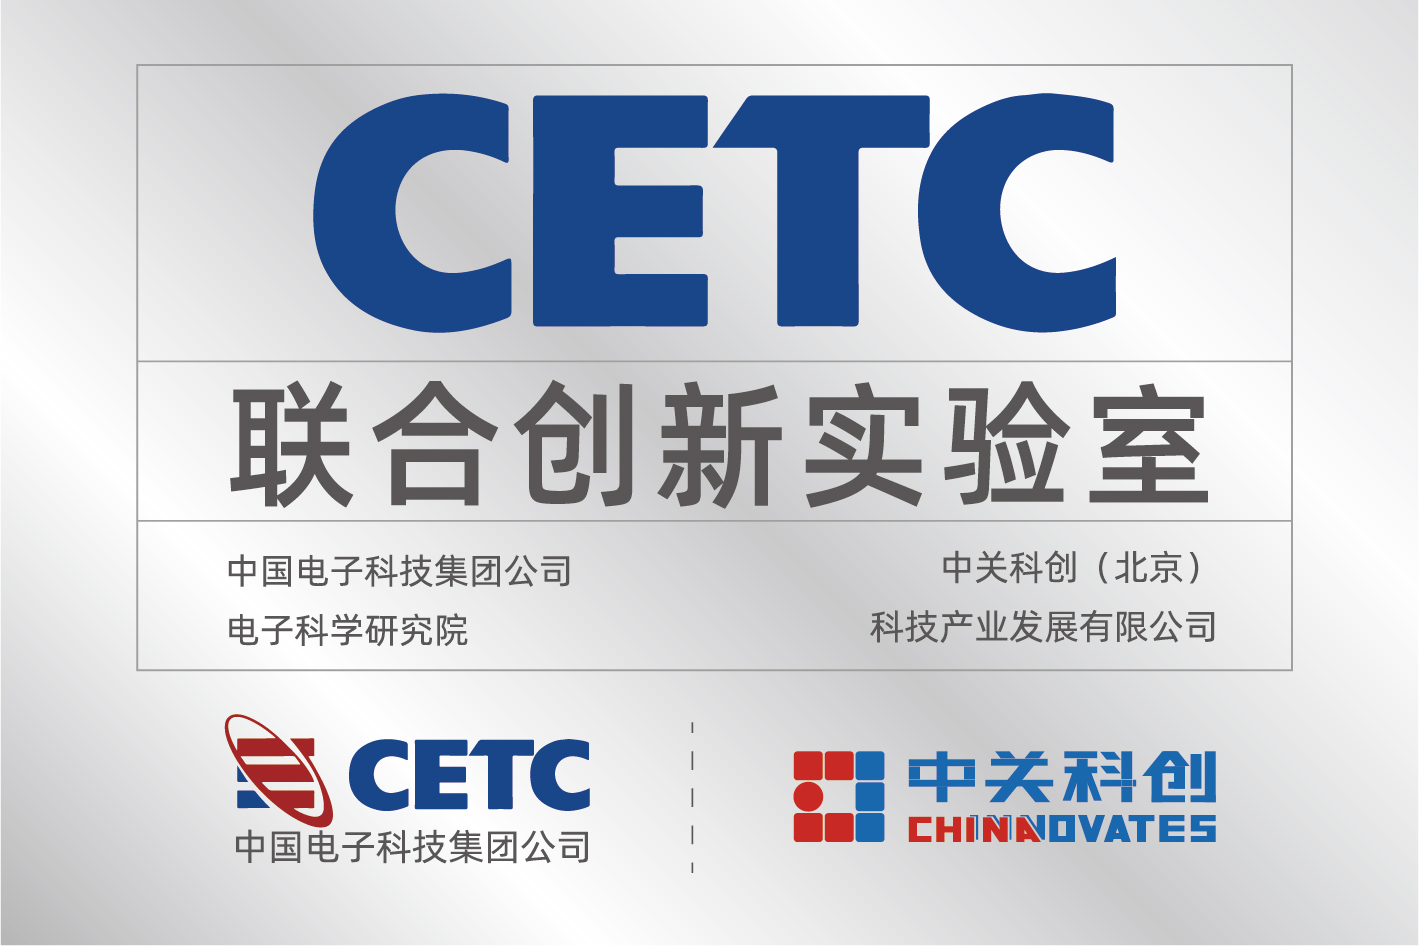 2015 年 4 月，与中国电子科技集团公司（CETC）电子研究院签约成立“联合创新实验室”,联合开发大型国产电磁仿真软件